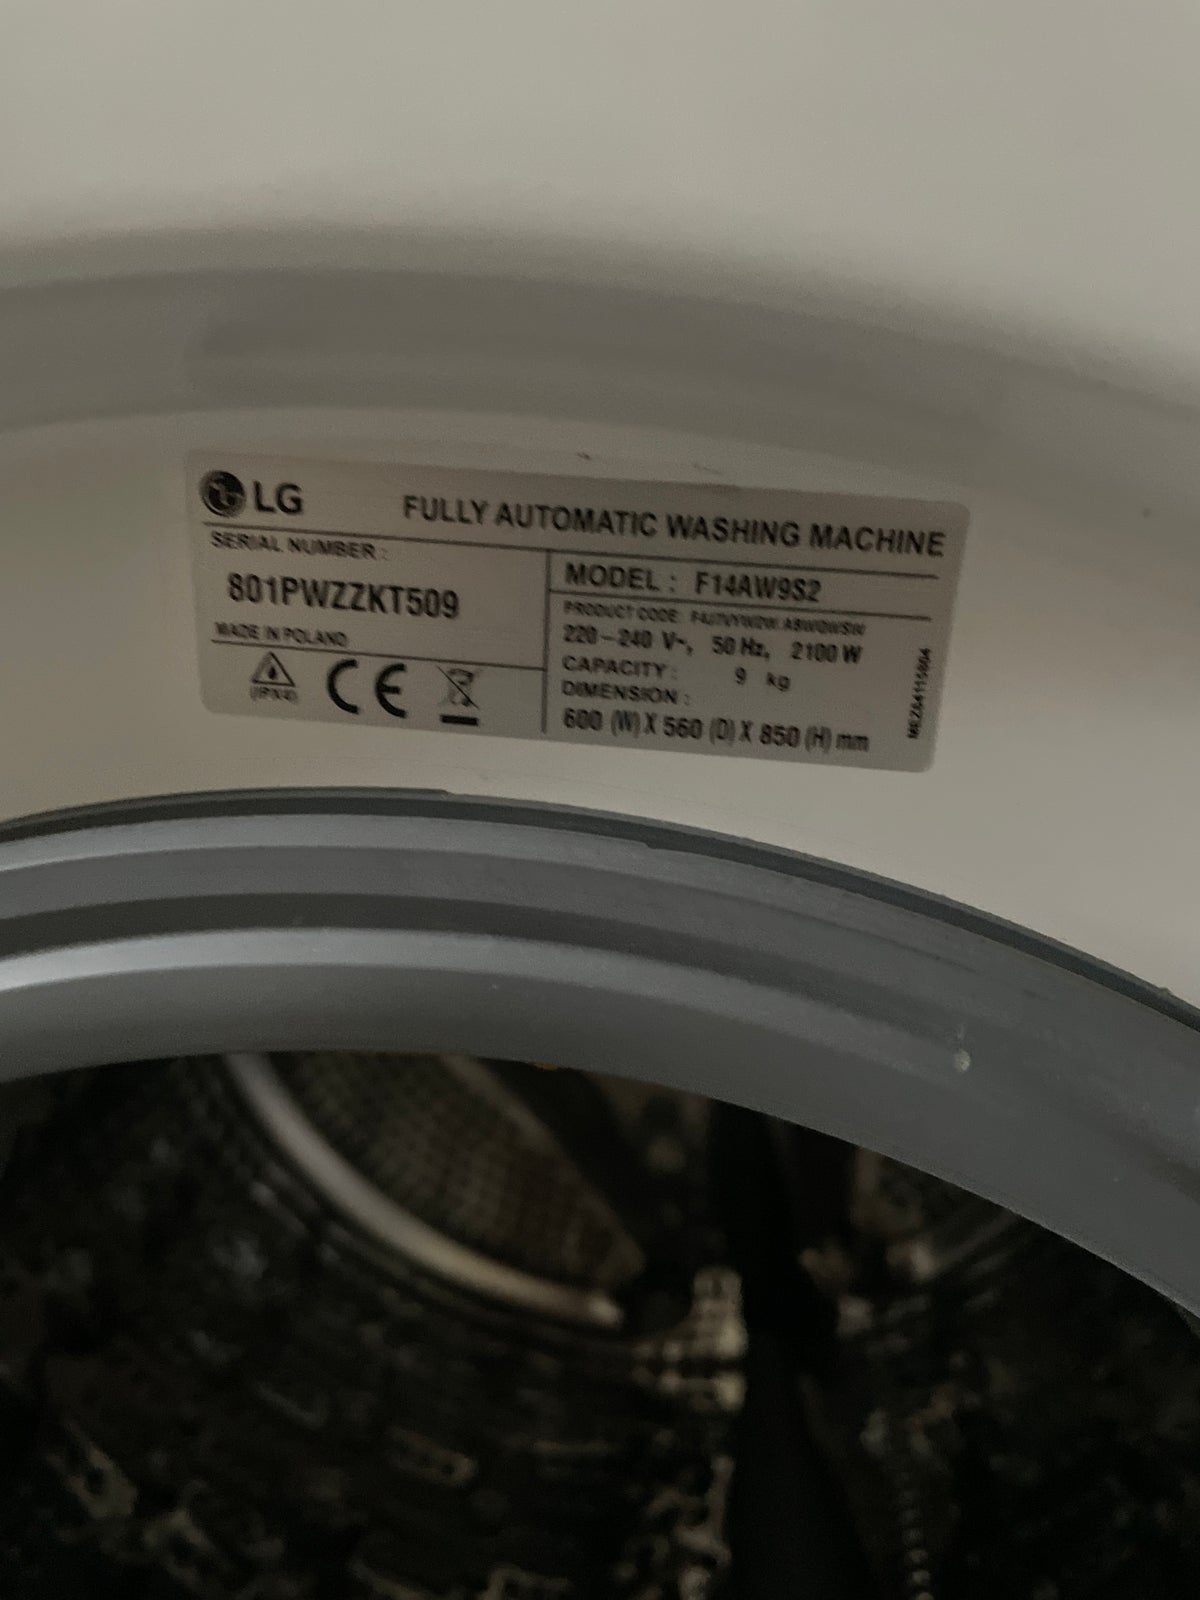 LG vaskemaskine, 801PWZZKT509, frontbetjent